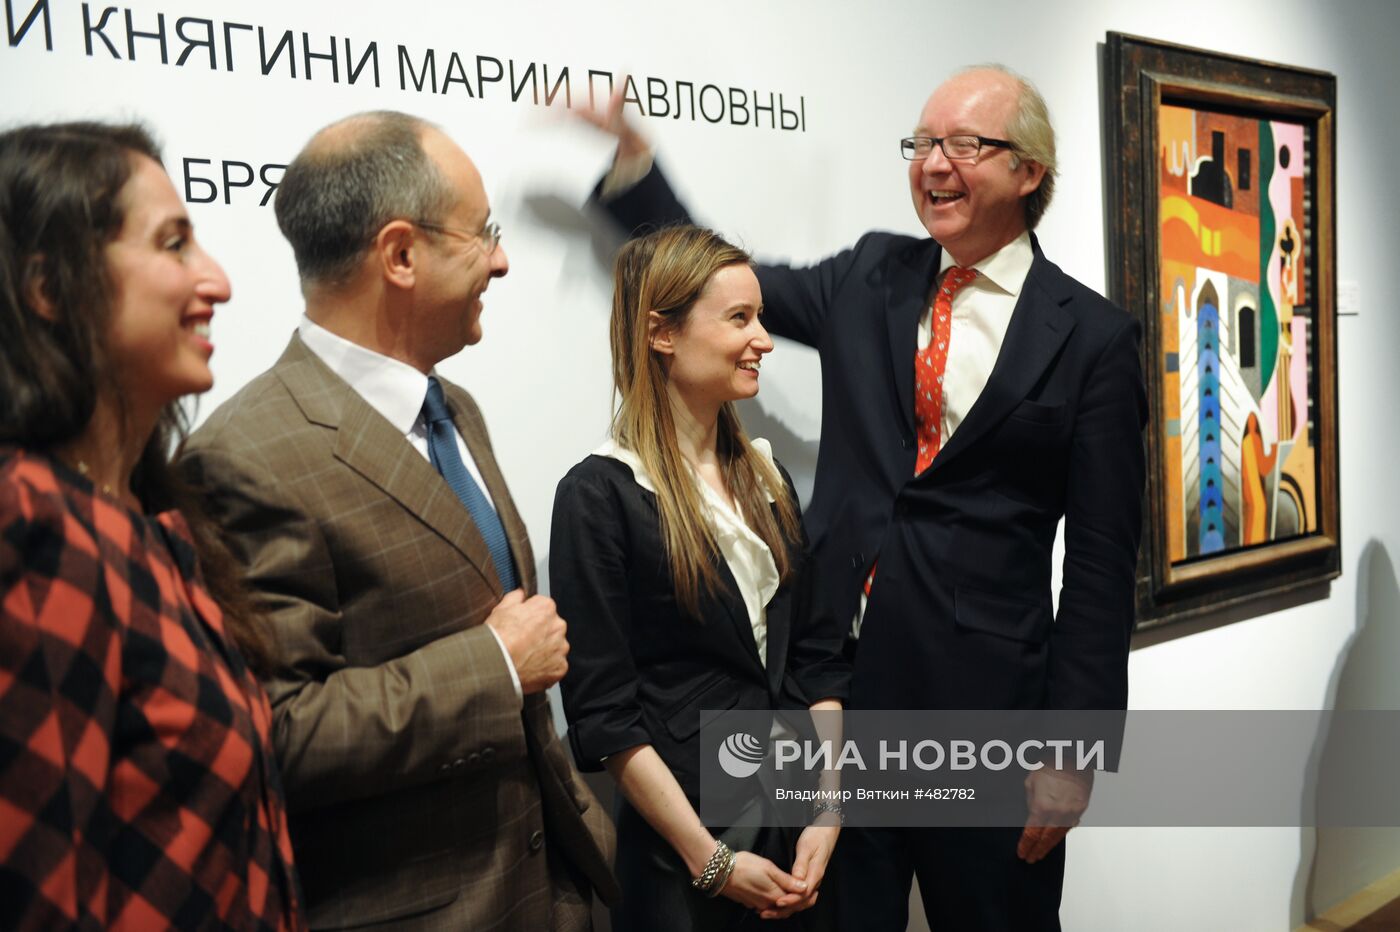 Открытие предаукицонной выставки "Сотбис" в Москве